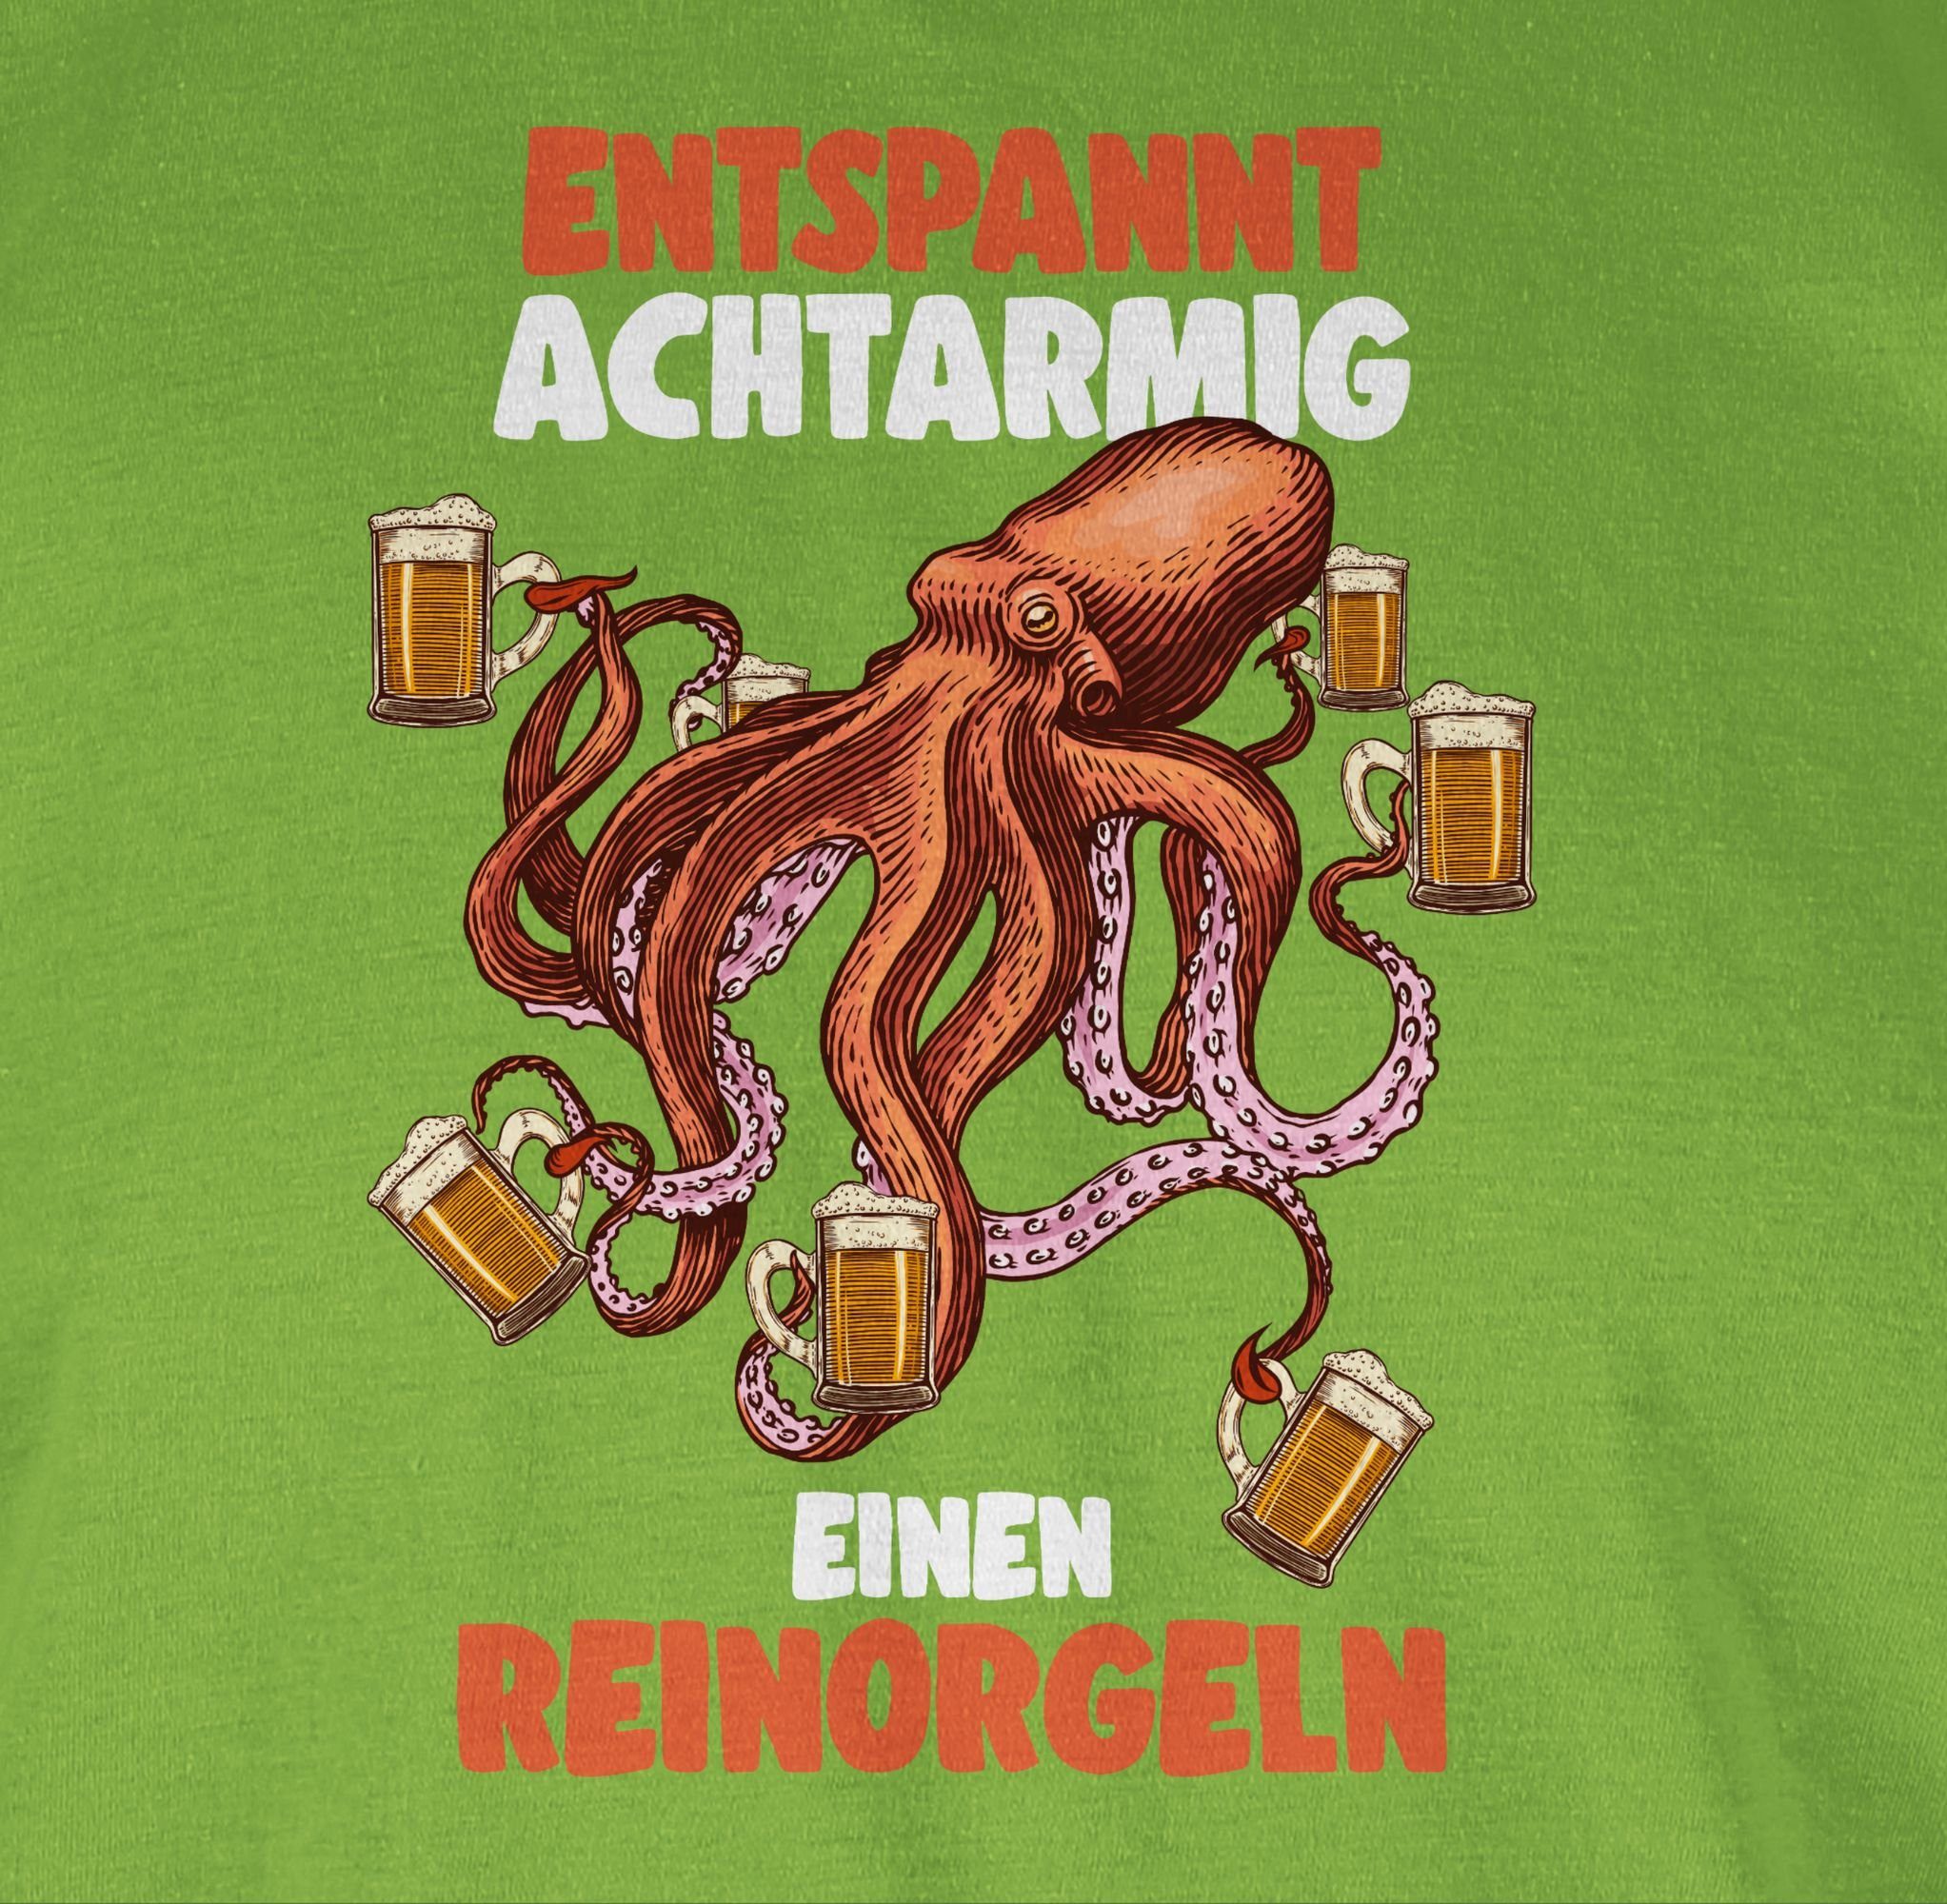 Shirtracer T-Shirt Entspannt achtarmig Herren - 03 Party armig reinorgeln S & - - Alkohol Bier 8 Hellgrün einen reinorgelson